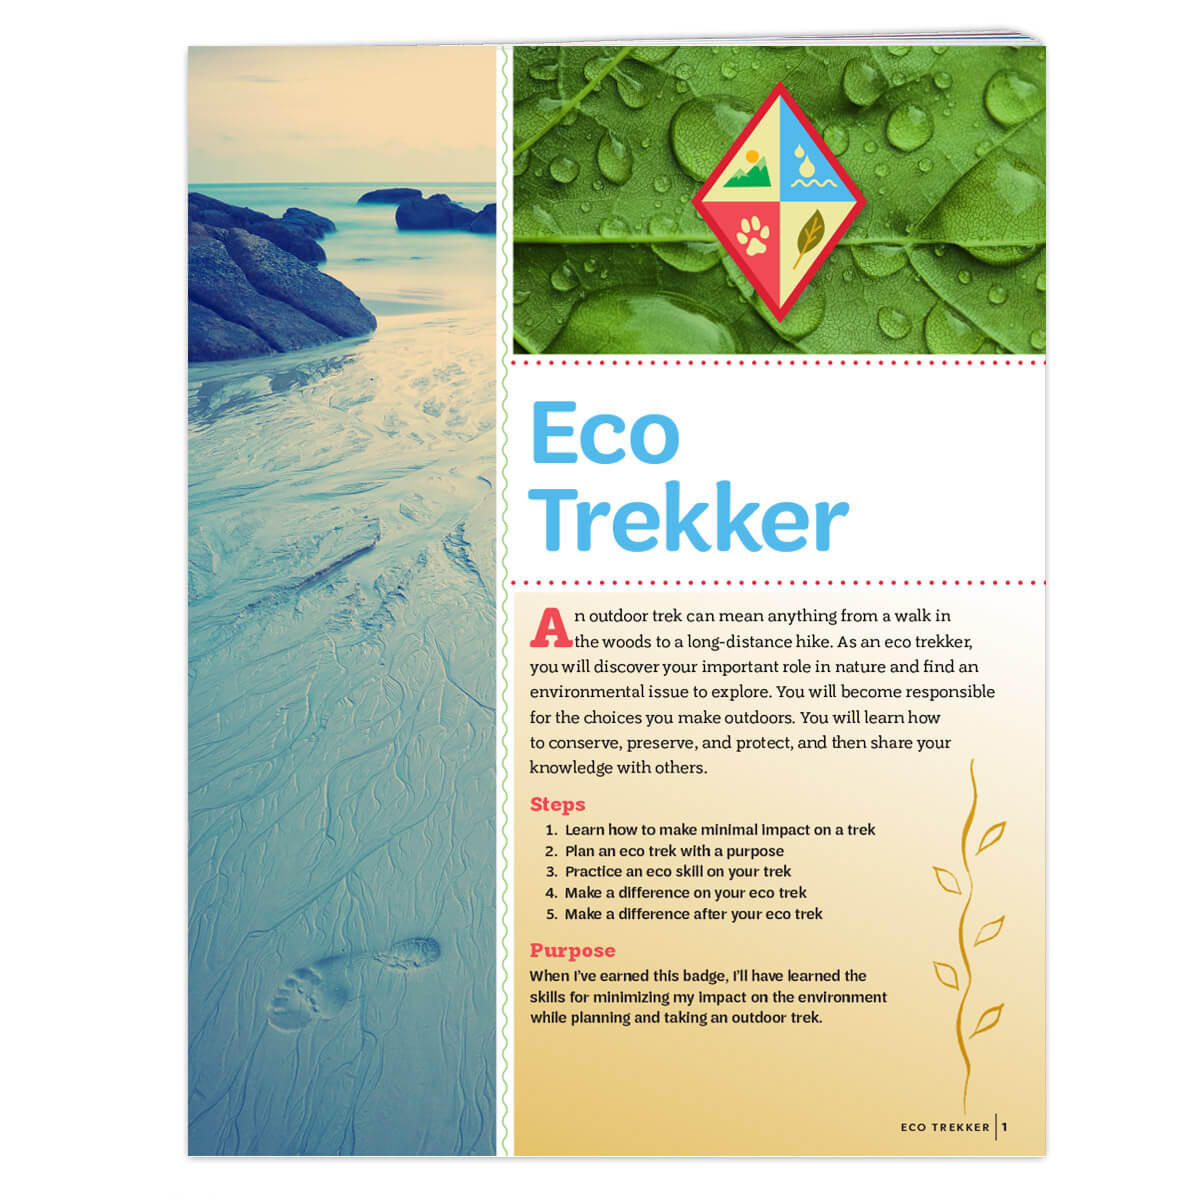 Eco Trekker Badge Requirements